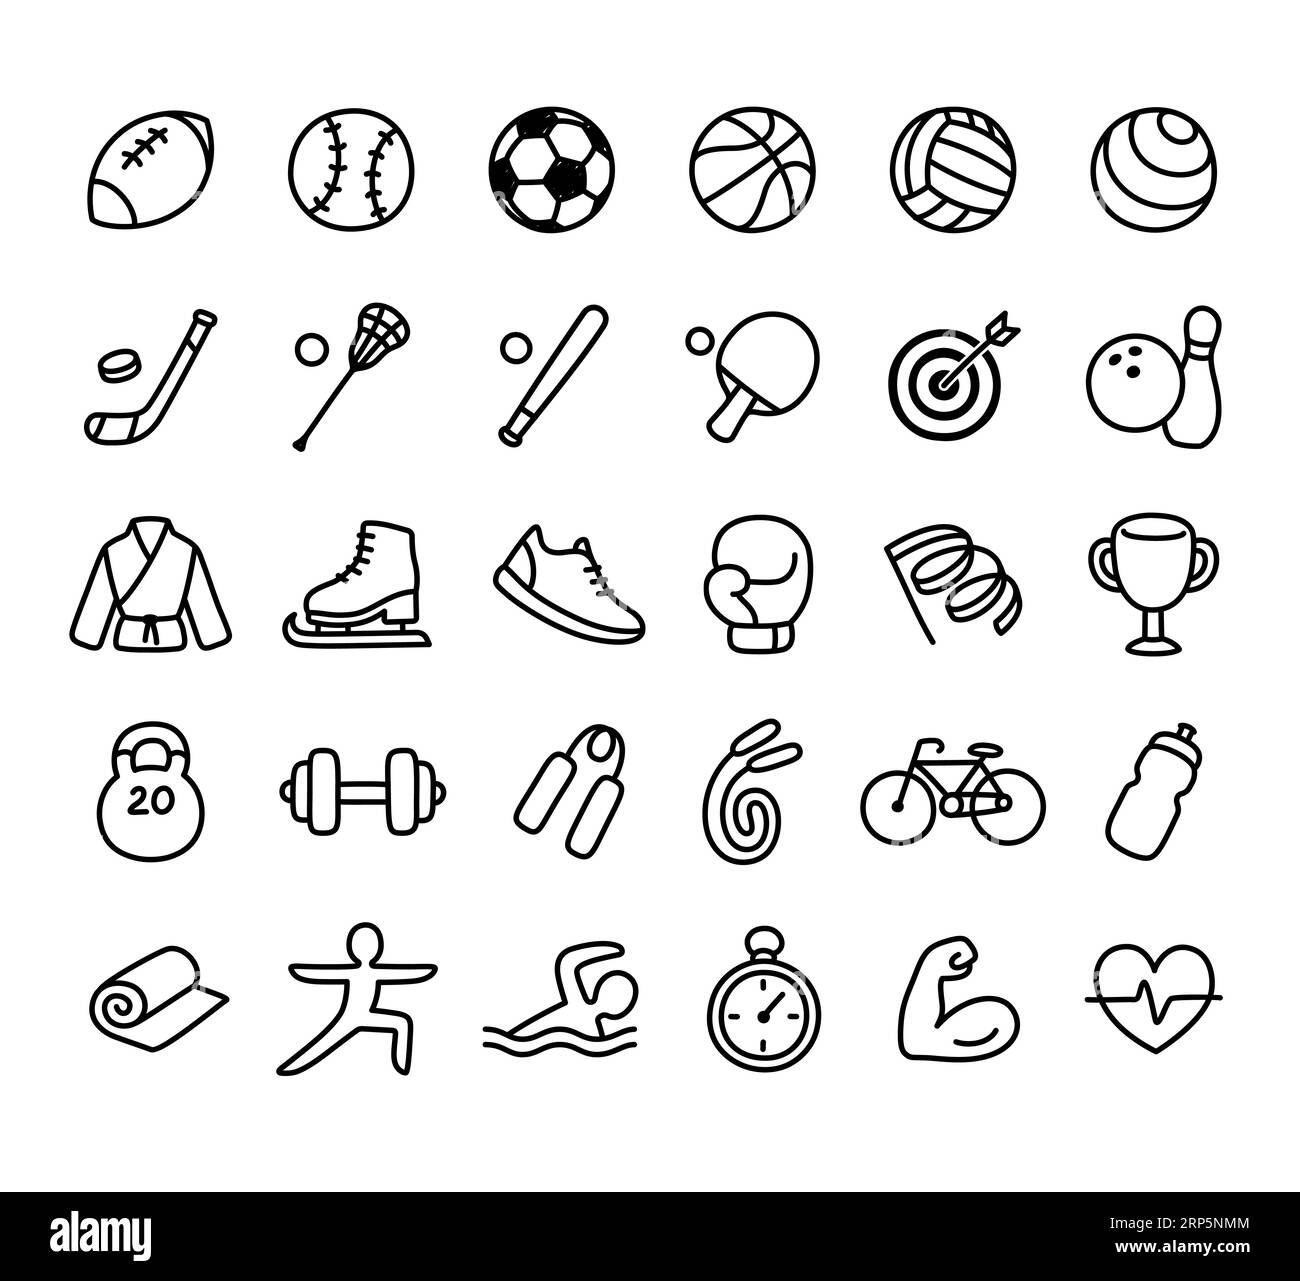 Set aus handgezeichneten Sport- und Fitnesslinien-Symbolen. Einfache Zeichentrickdarstellungen von Ballspielen, Ausrüstung und anderen sportlichen Symbolen. Stock Vektor